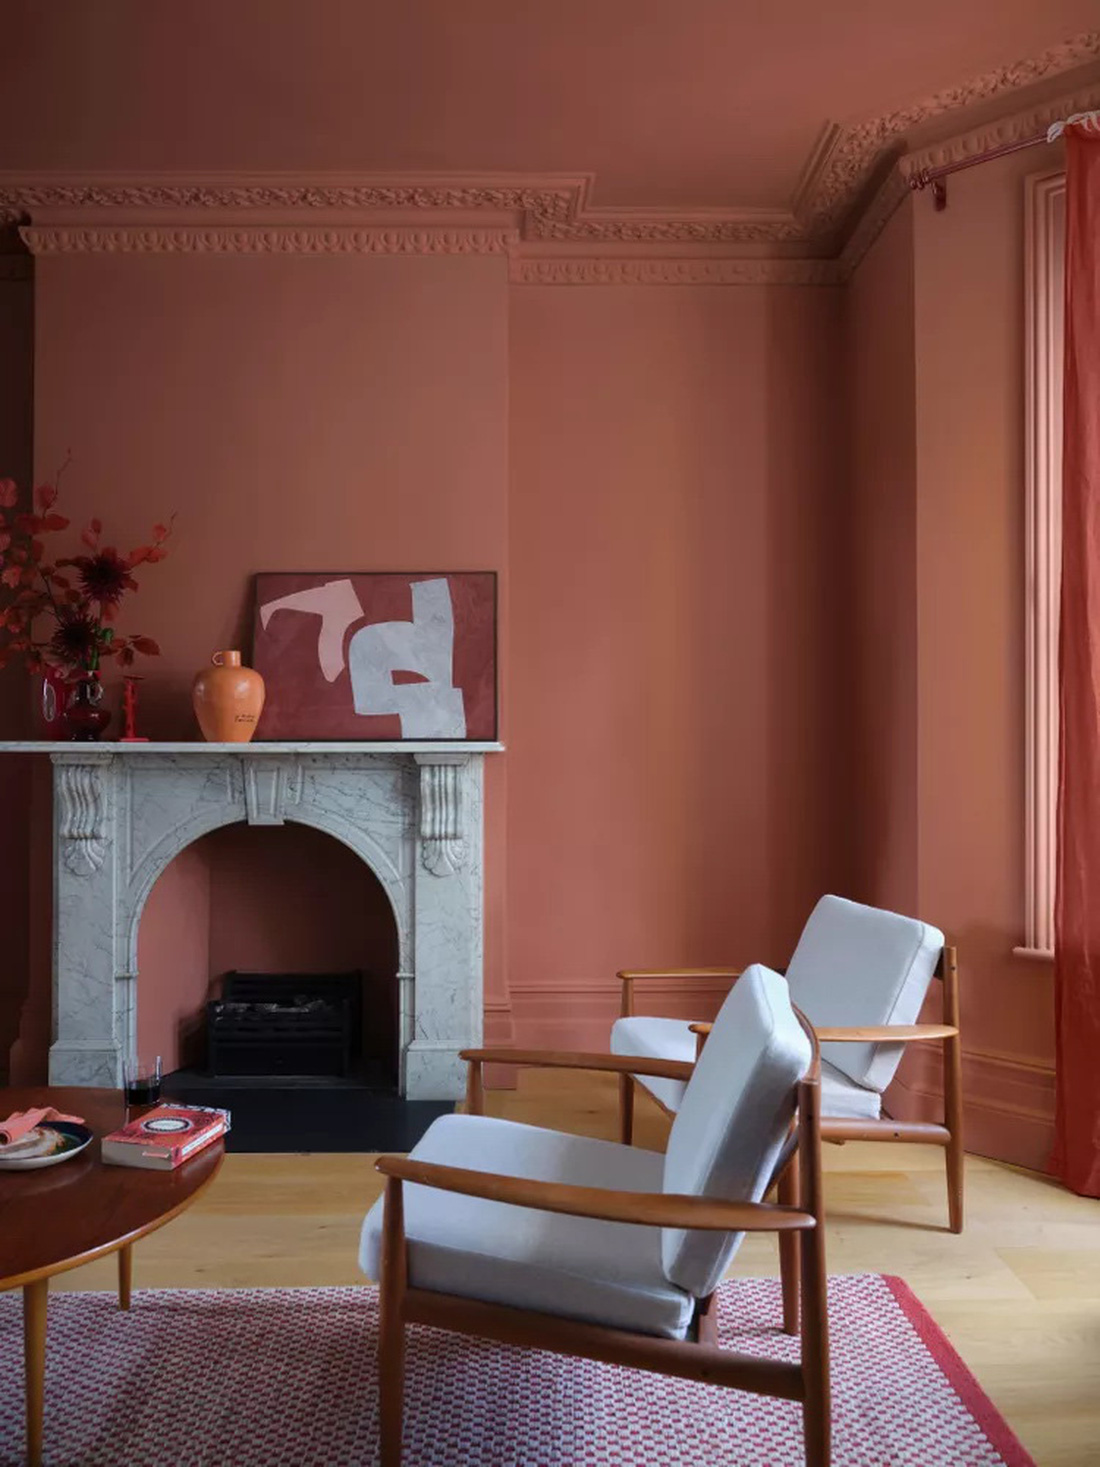 Để có sự thay đổi hoàn hảo cho căn phòng có thể sơn các bức tường bằng màu đỏ ấm cúng - Ảnh: BHG